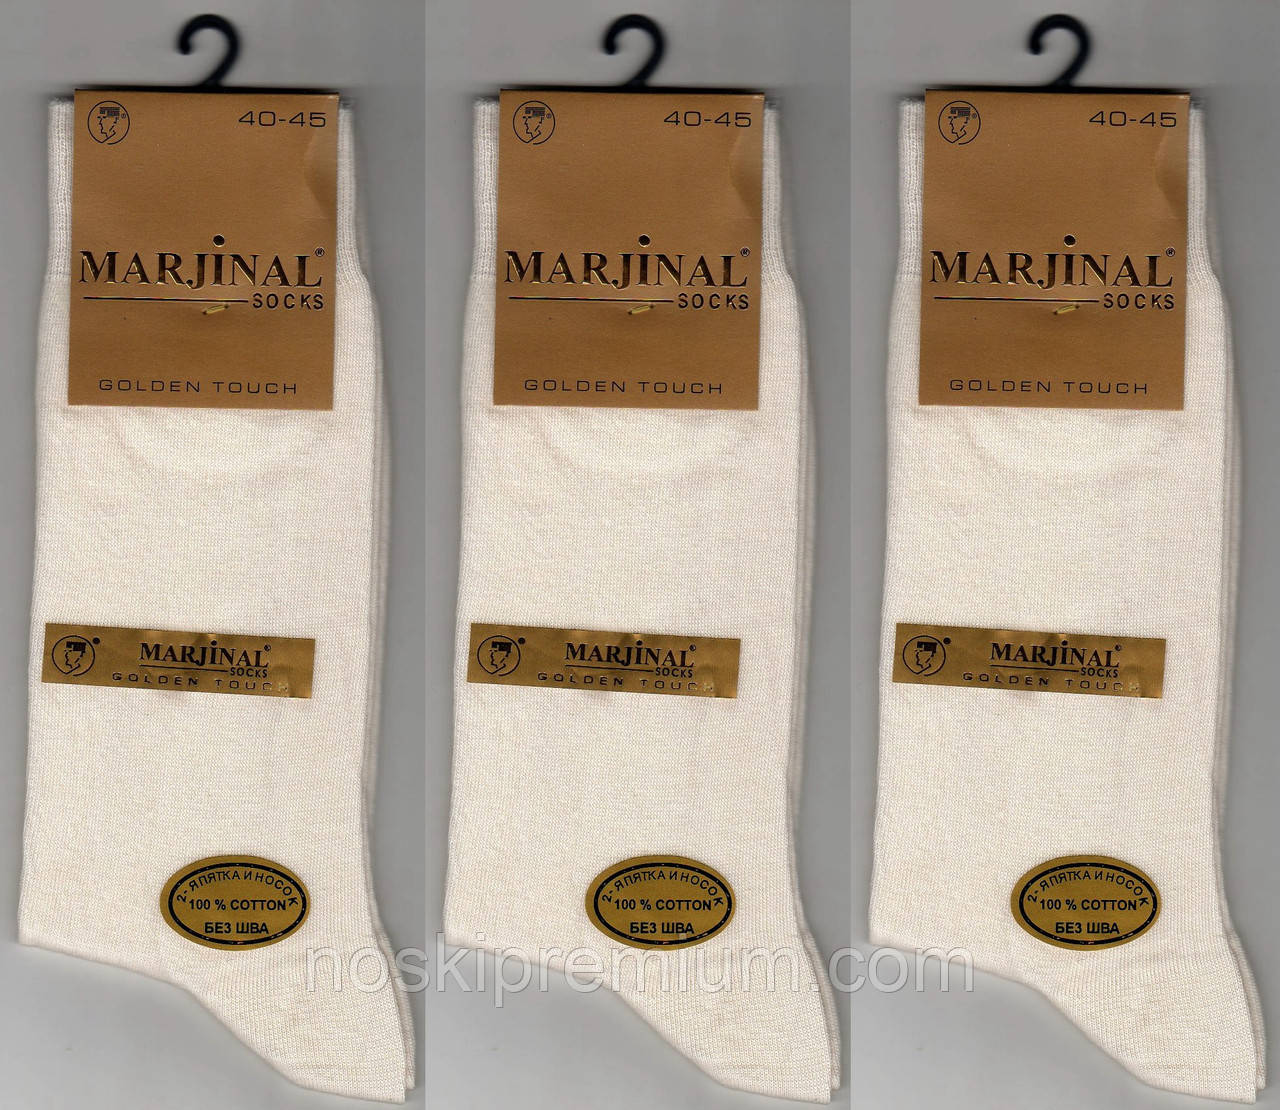 Шкарпетки чоловічі 100% шовковий бавовна Marjinal, Туреччина, ароматизовані, без шва, молочні, 778